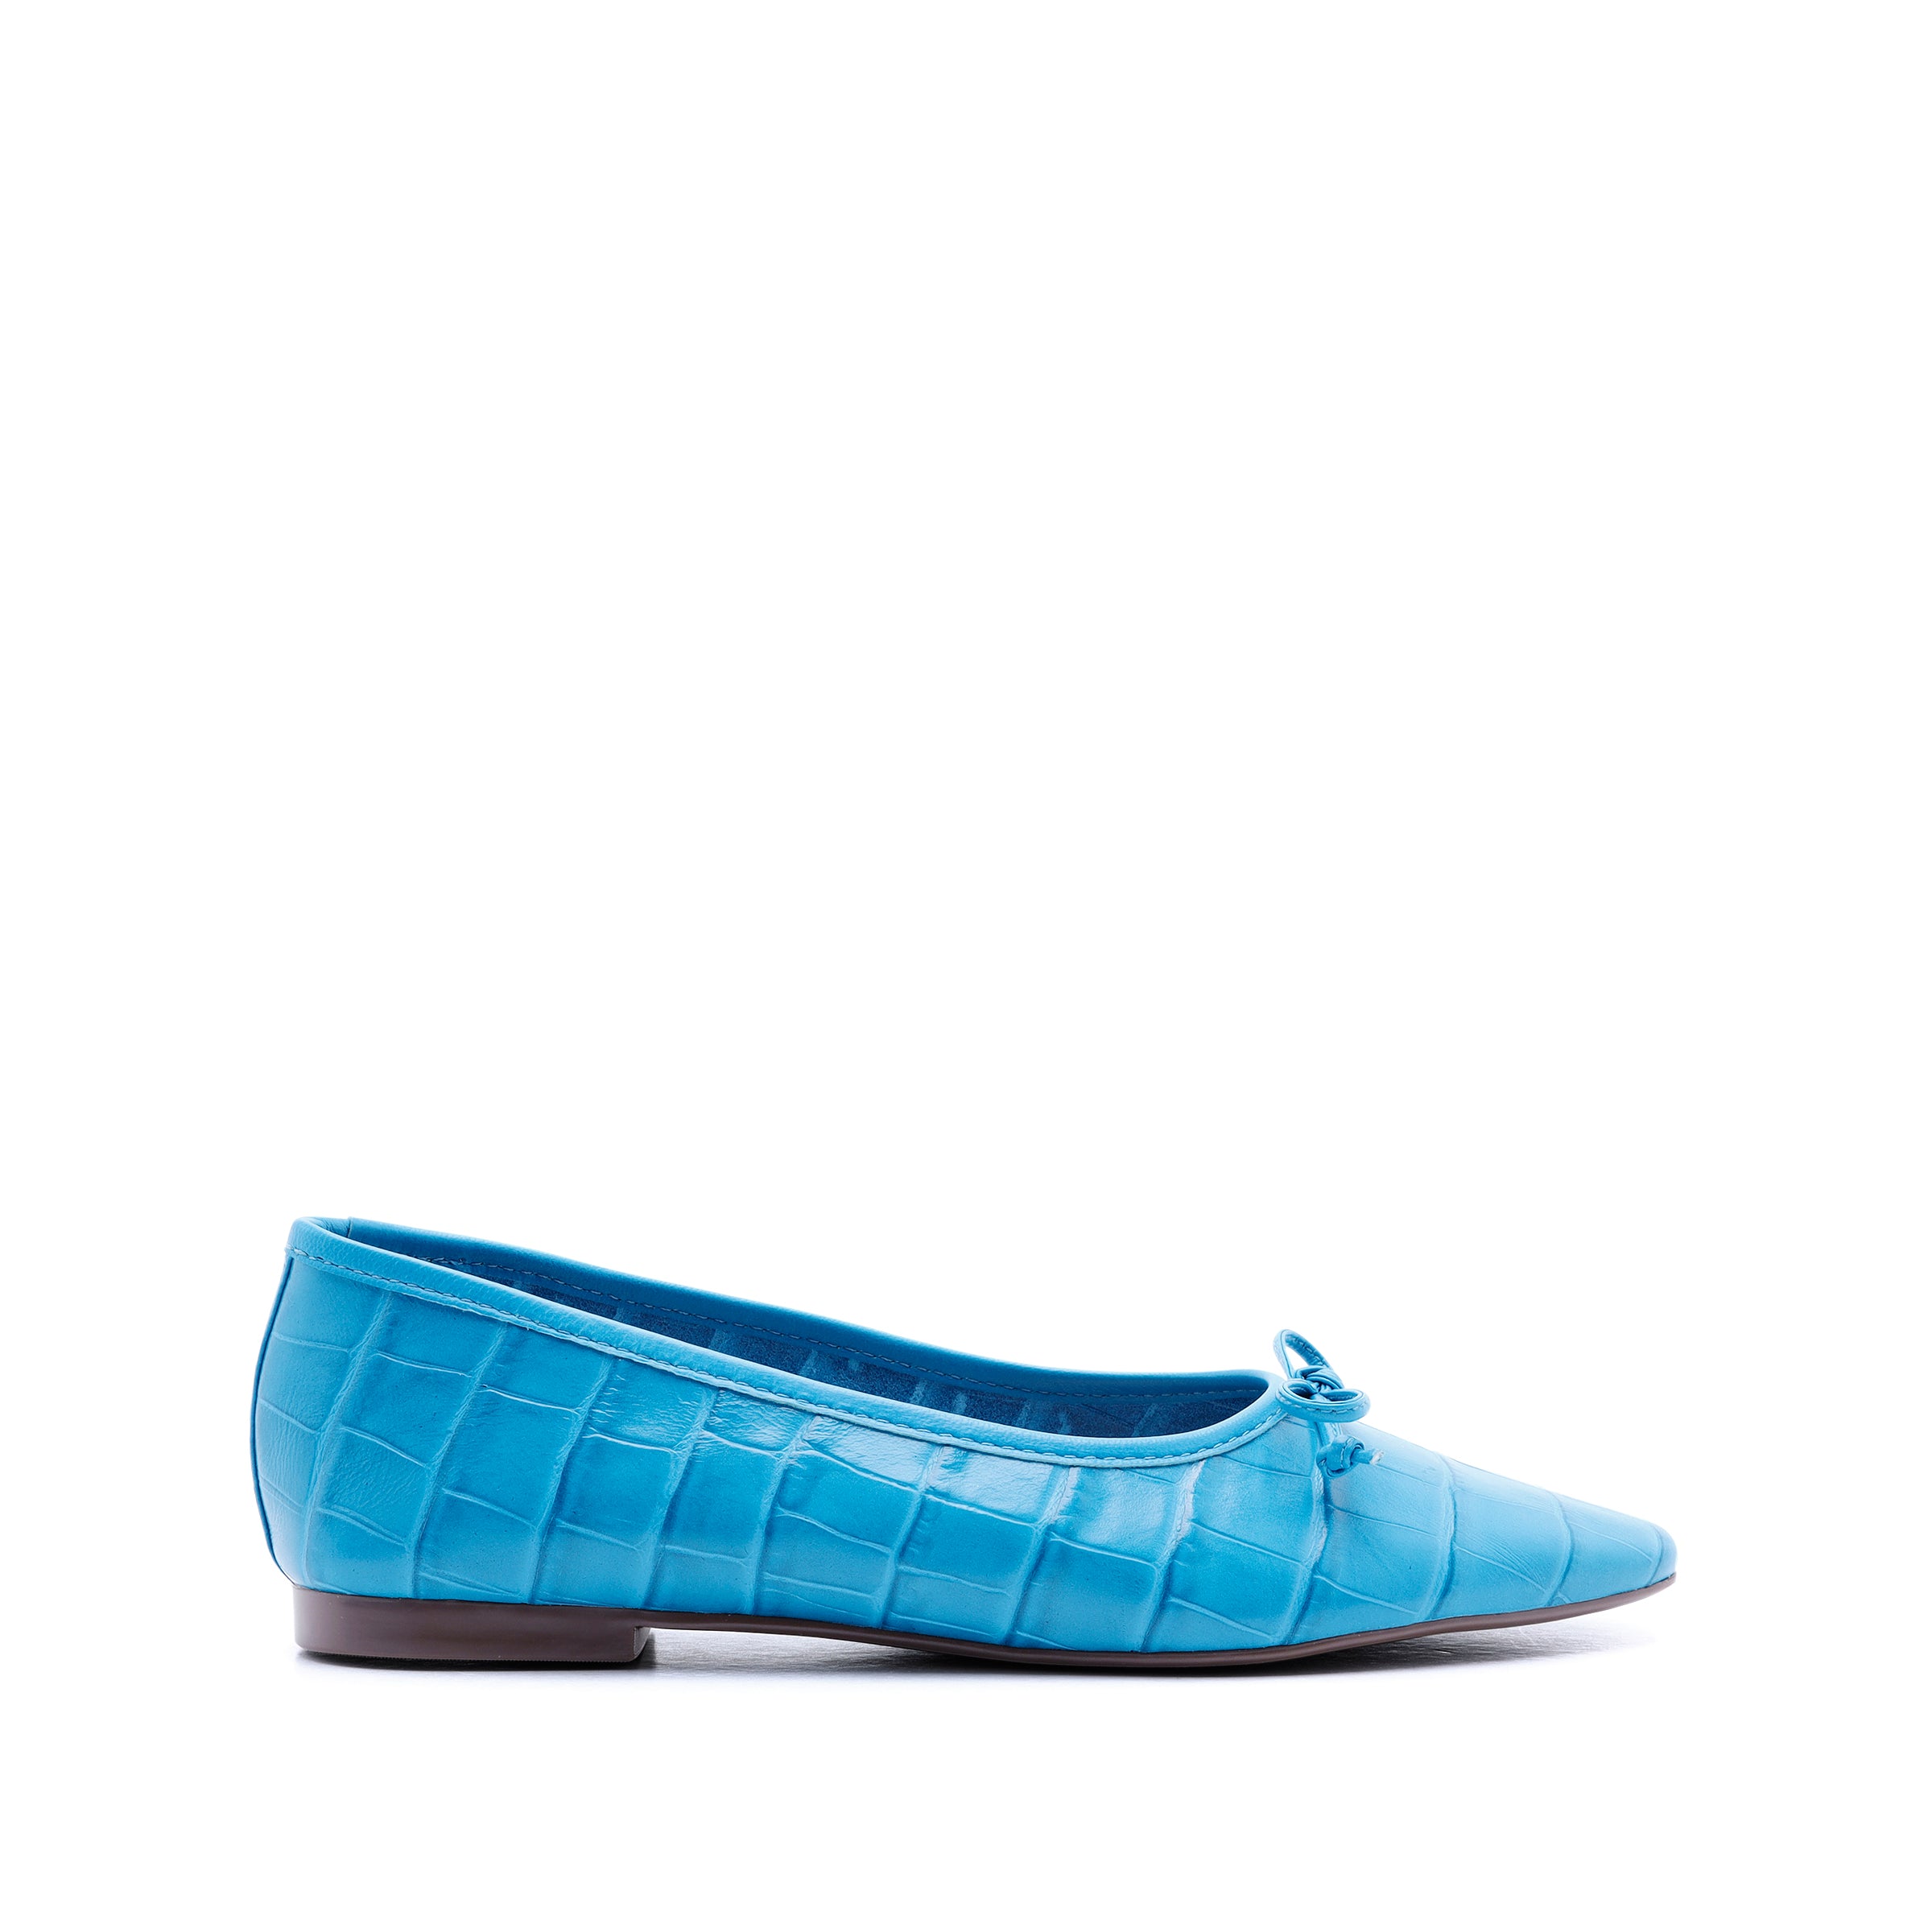 Arissa Ballet Flat in Croco Effect Leather | Schutz Shoes – SCHUTZ